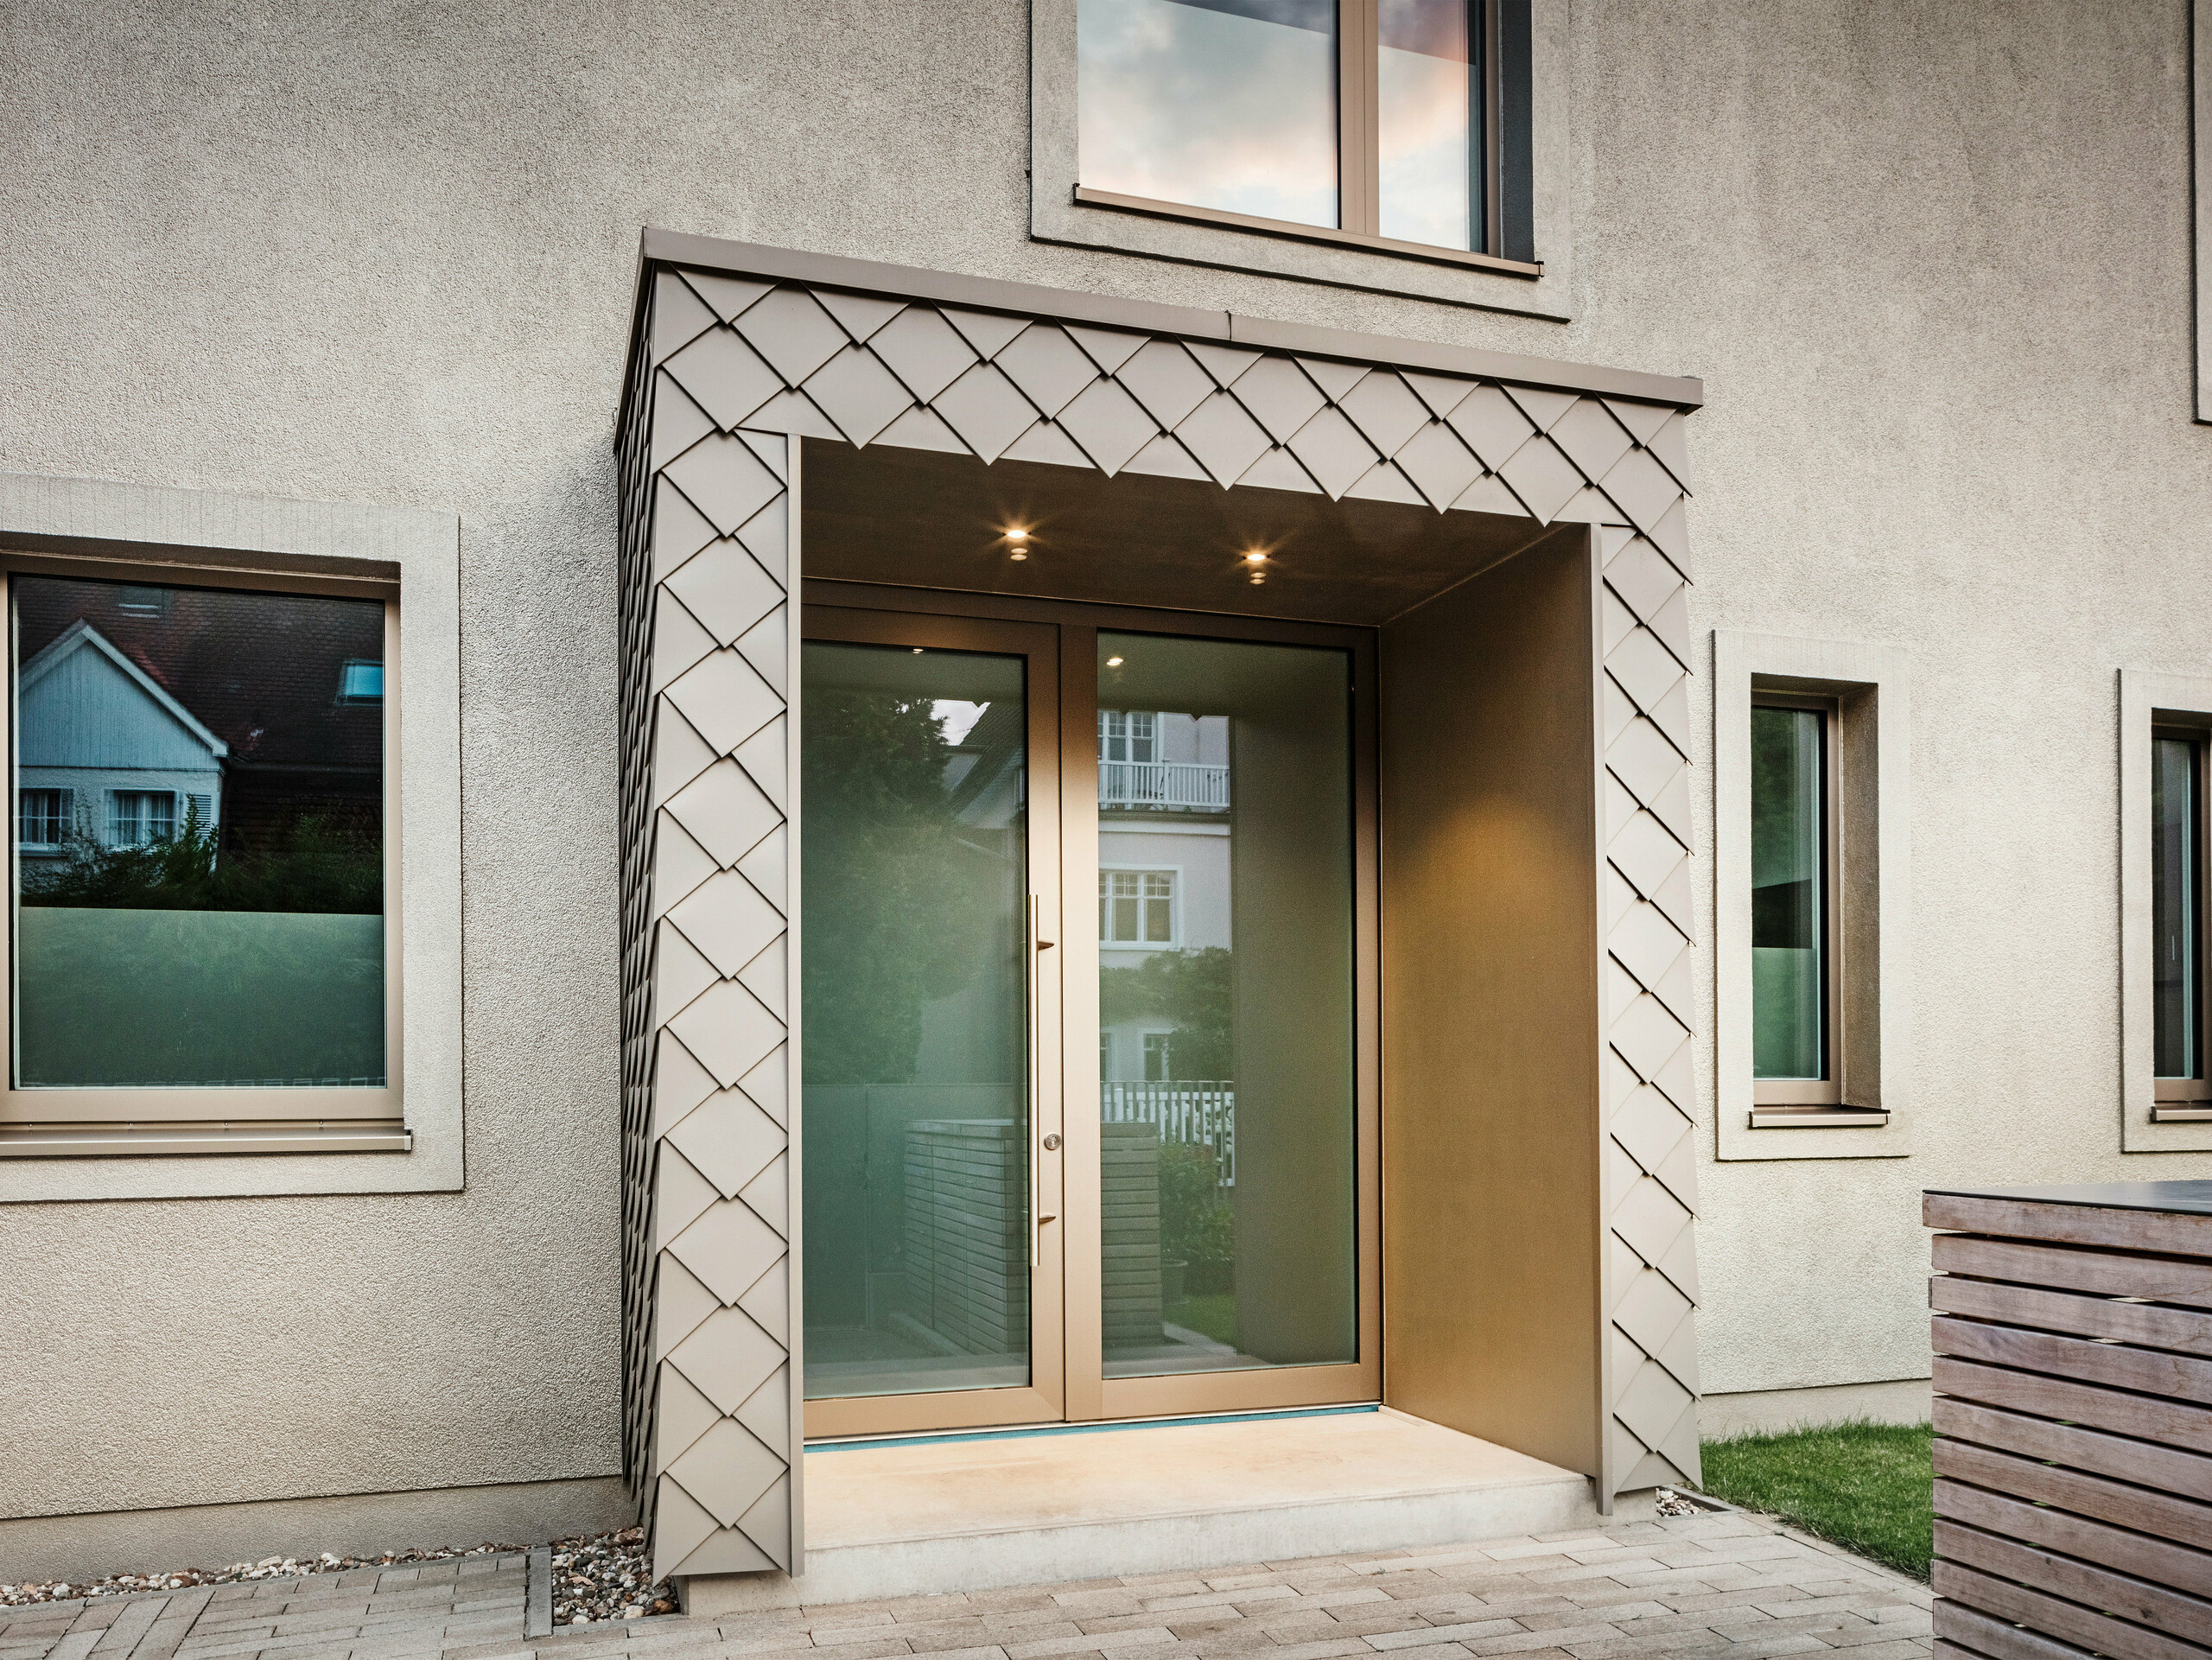 Detailní záběr vstupního prostoru moderního rodinného domu s hliníkovým opláštěním v bronzové barvě od PREFA. Vchod je pokrytý a pokrytý elegantními hliníkovými šablonami, což dává prostoru moderní a stylový vzhled. Nalevo a napravo od vstupních dveří jsou velká okna, která vytvářejí světlou a příjemnou atmosféru.